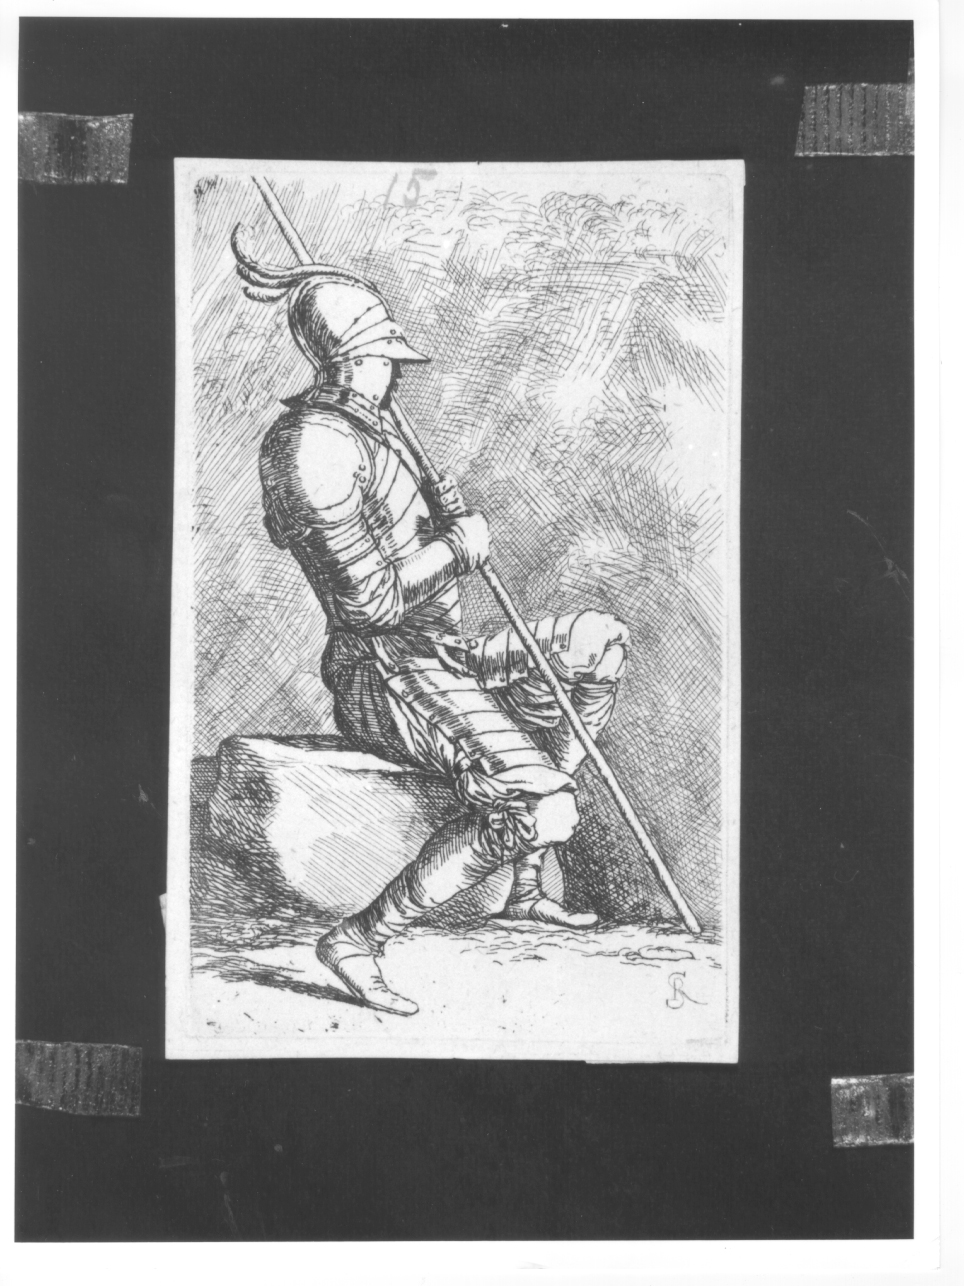 Soldato seduto su una pietra, stringe con le mani un'asta, soldato seduto che impugna un'asta (stampa smarginata) di Rosa Salvatore (terzo quarto sec. XVII)